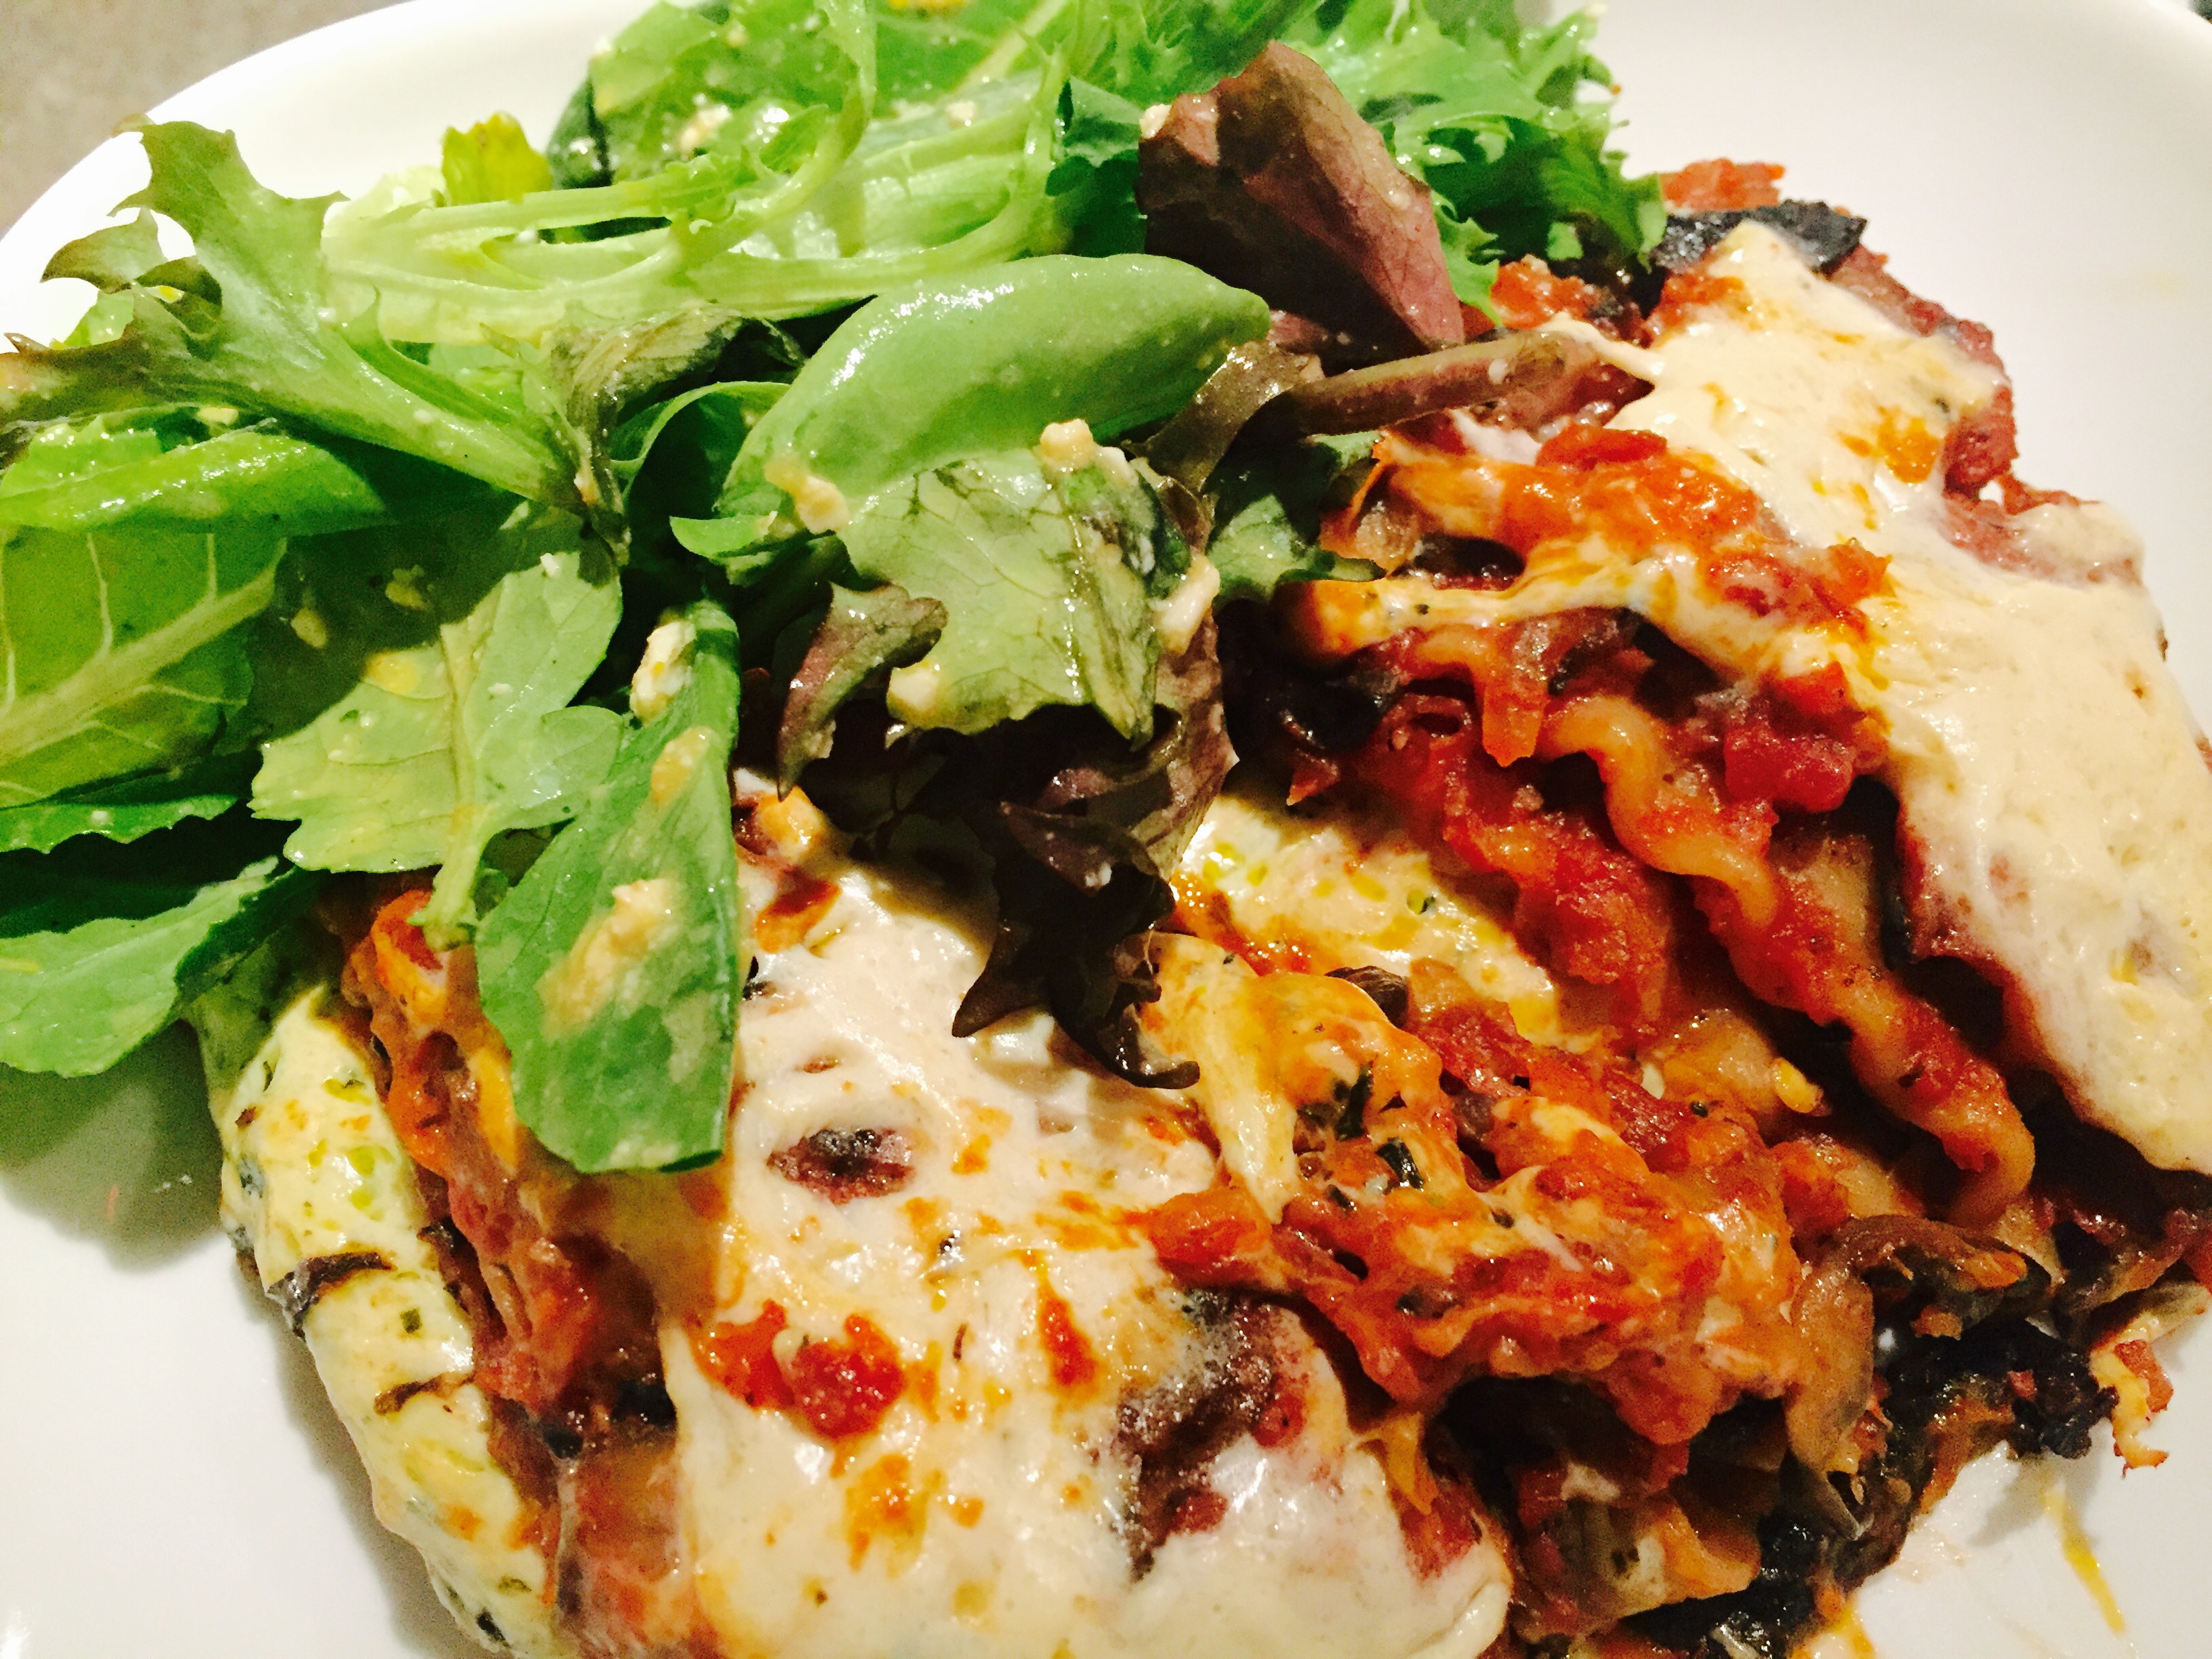 Hearty Vegetarian Lasagna with Mixed Green Salad